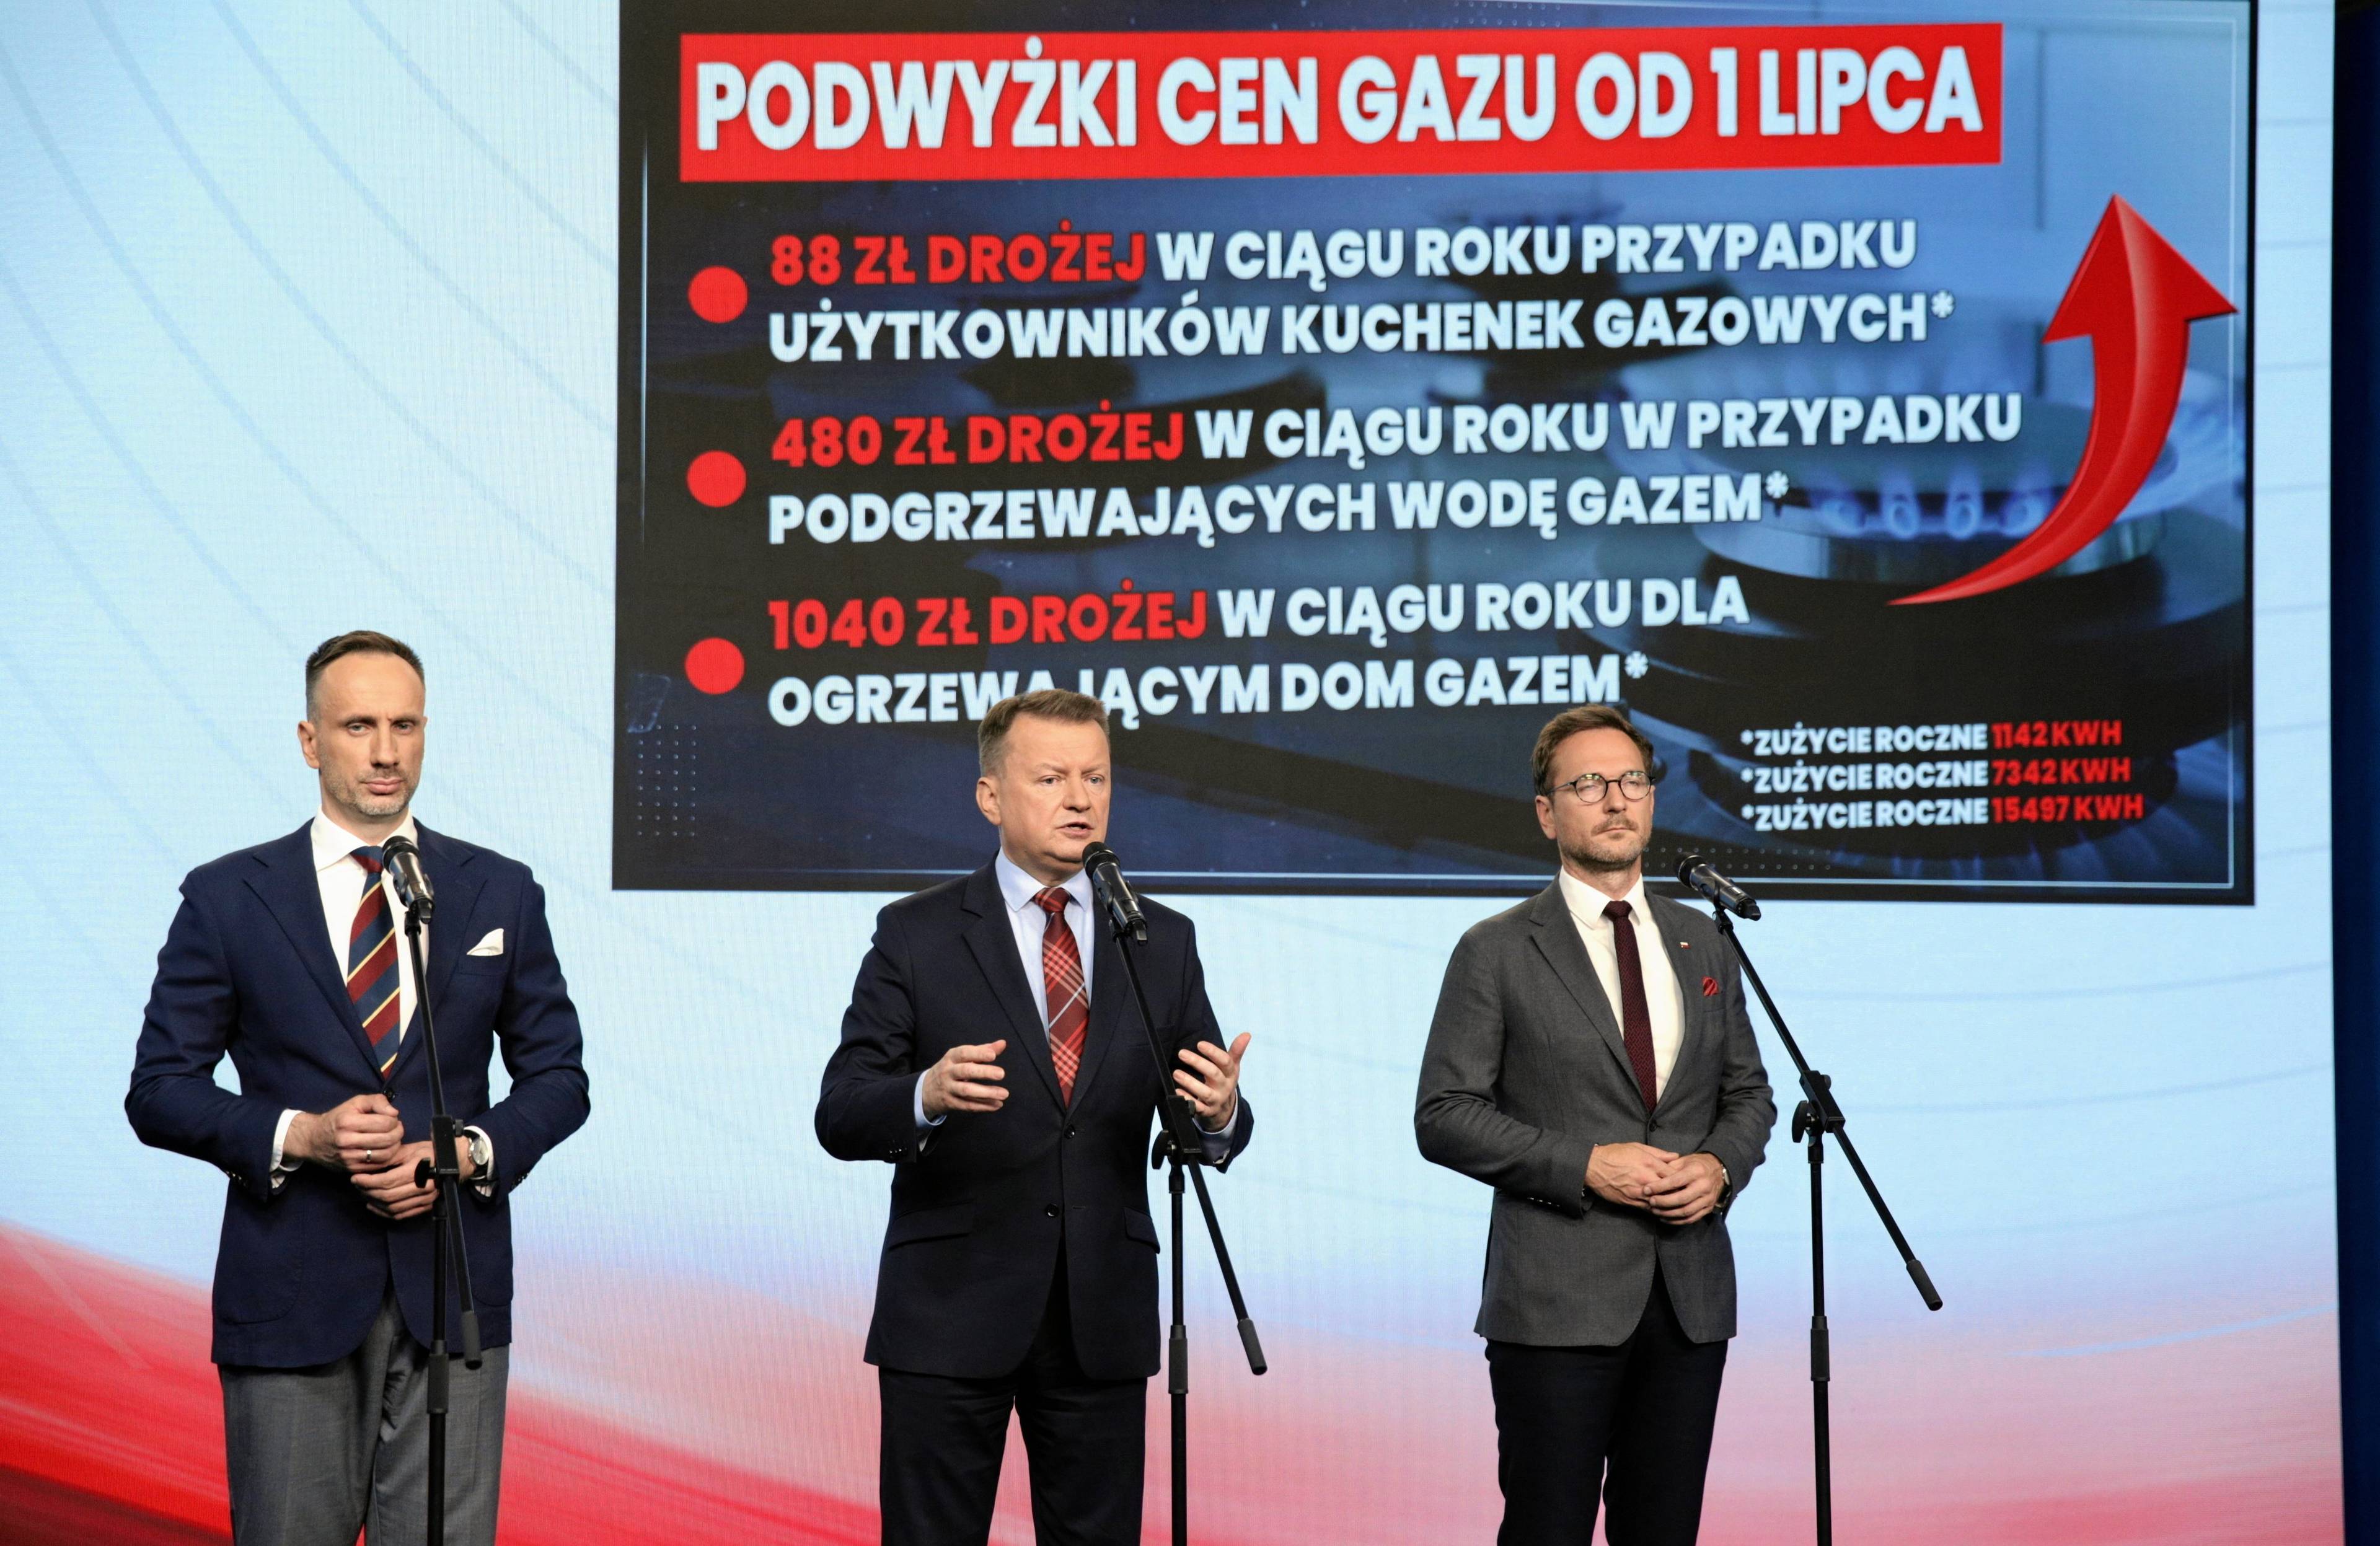 Trzech polityków PiS na konferencji prasowej na tle planszy z napisem "PODWYŻKI CEN GAZU OD 1 LIPCA"